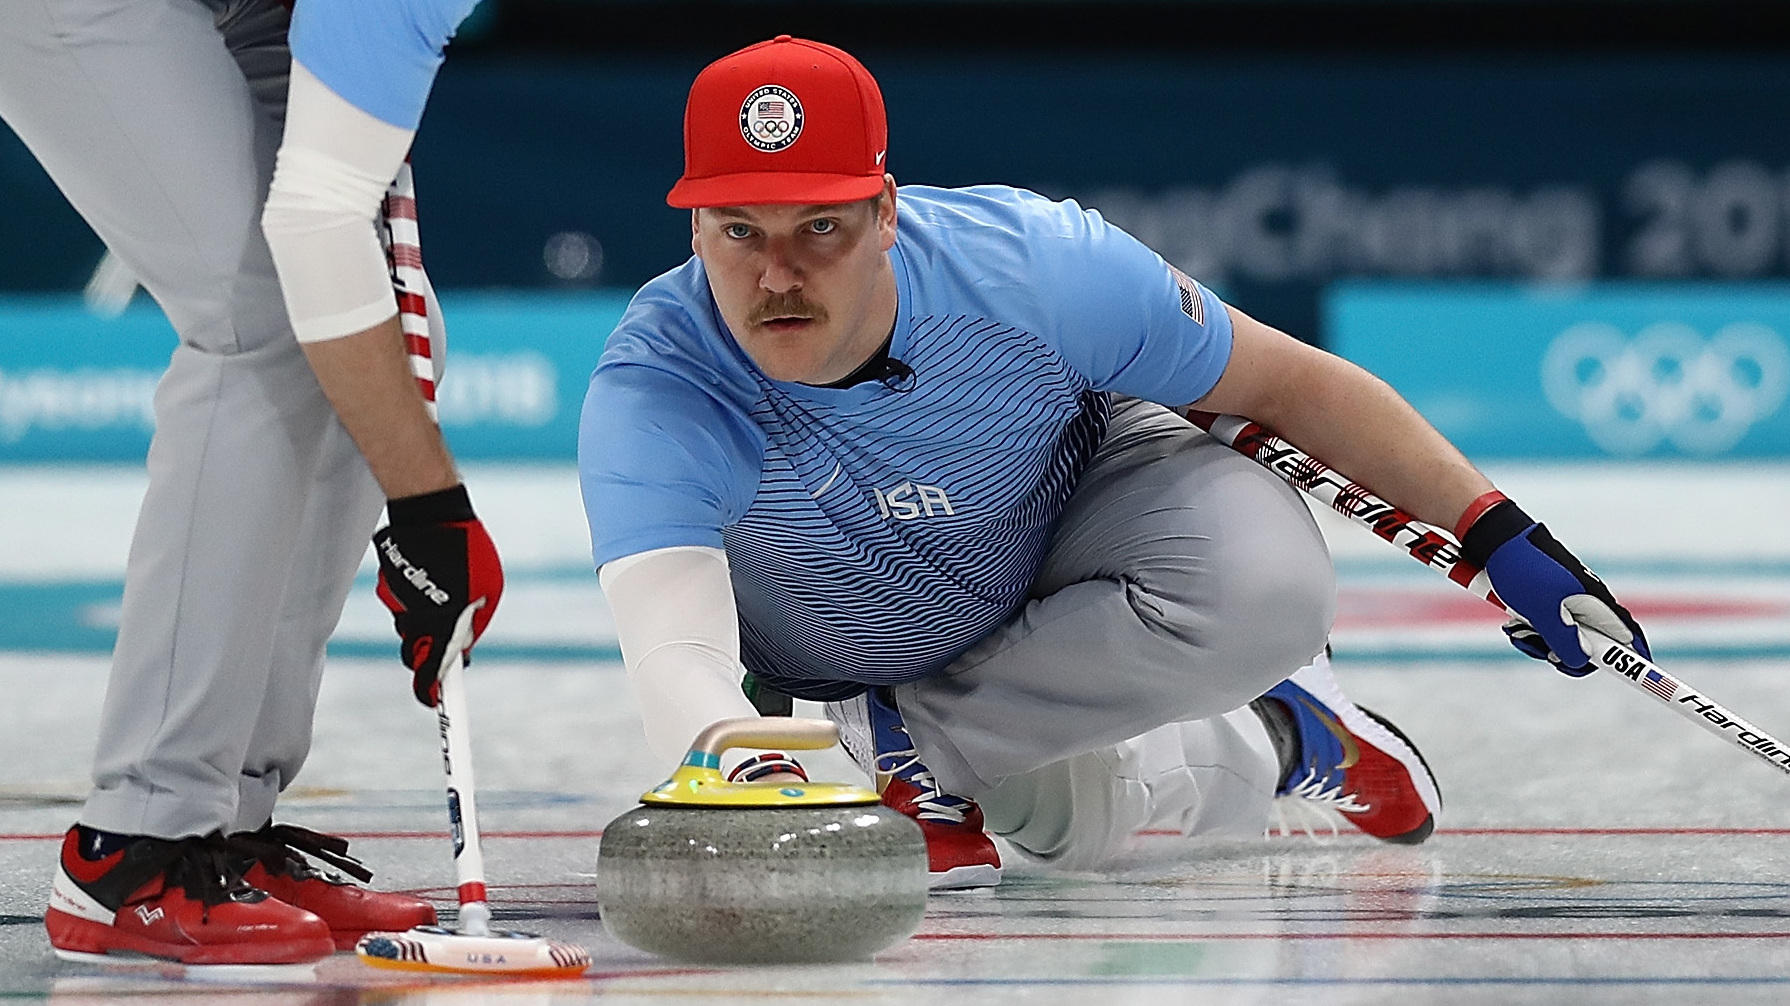 U.S. Men's Curling Takes On Sweden In The Gold Medal Final [LIVE